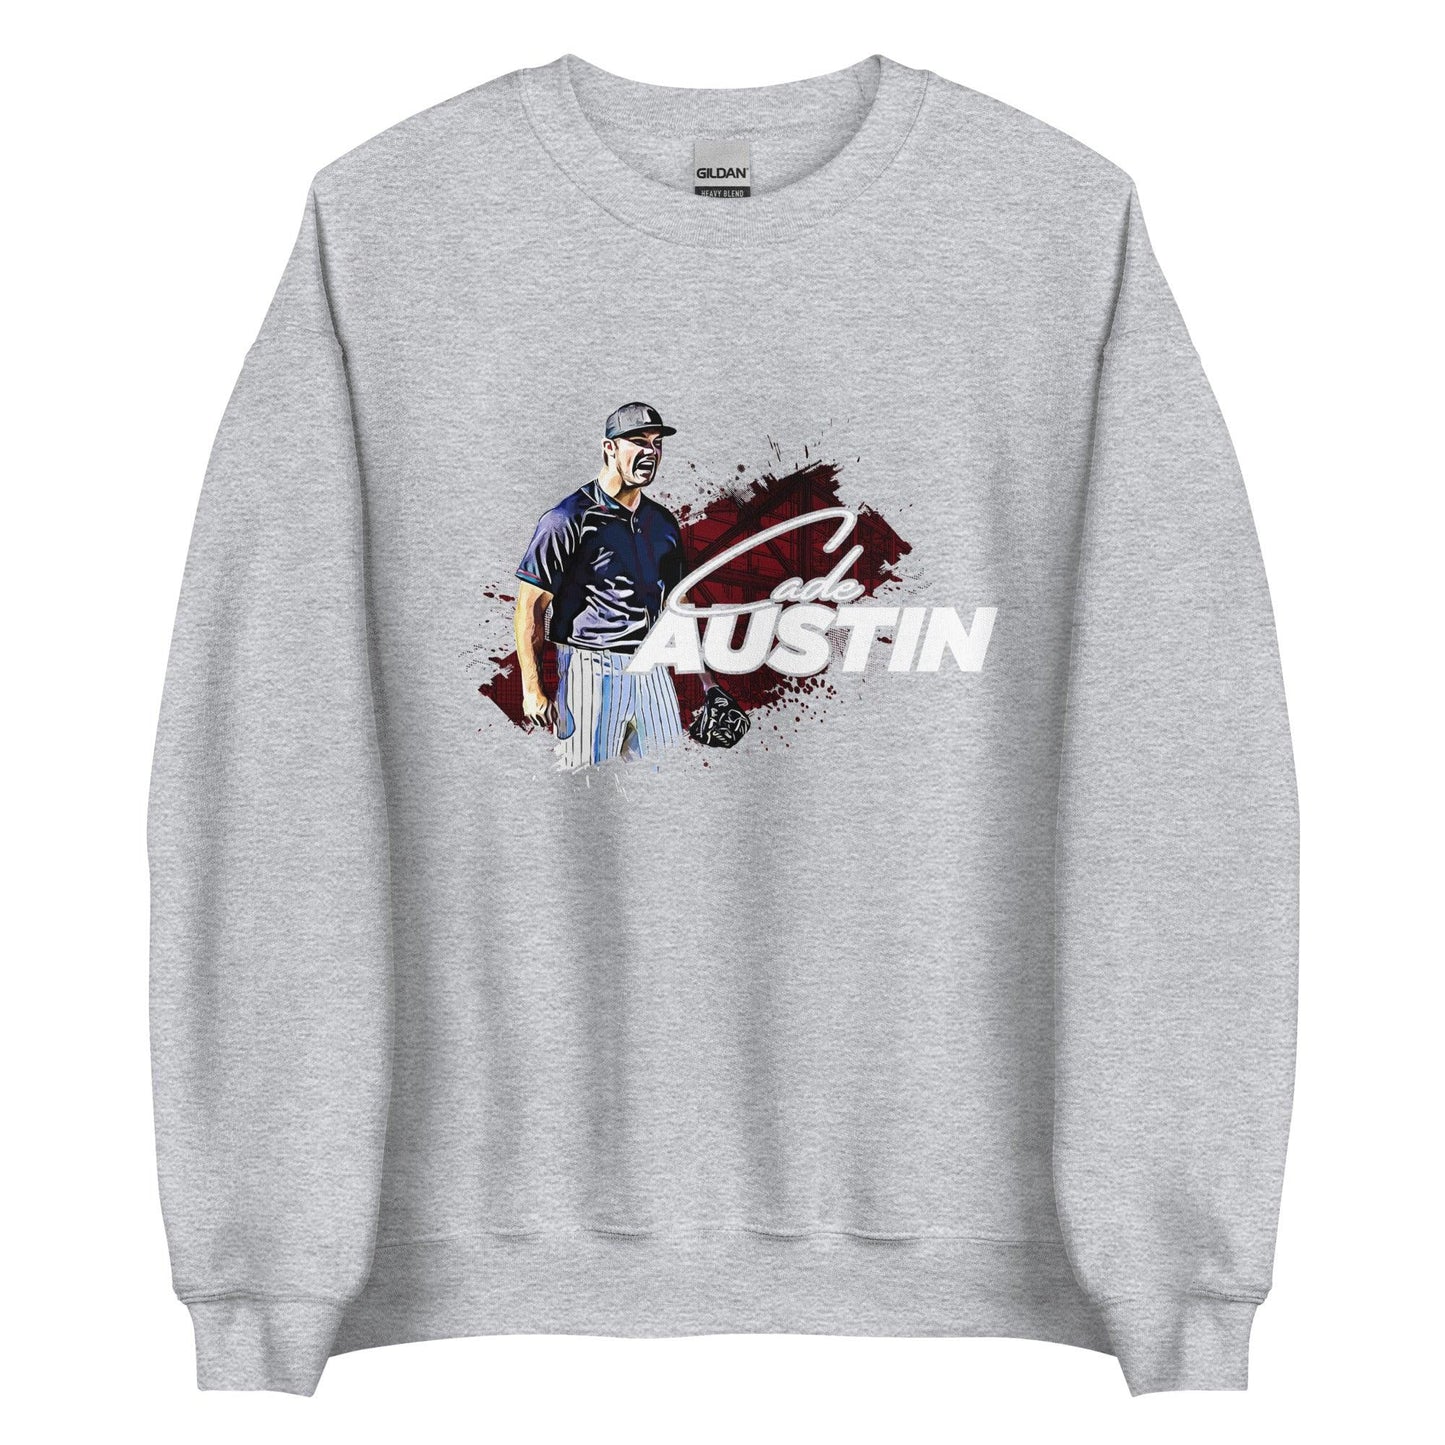 Cade Austin "Gameday" Sweatshirt - Fan Arch